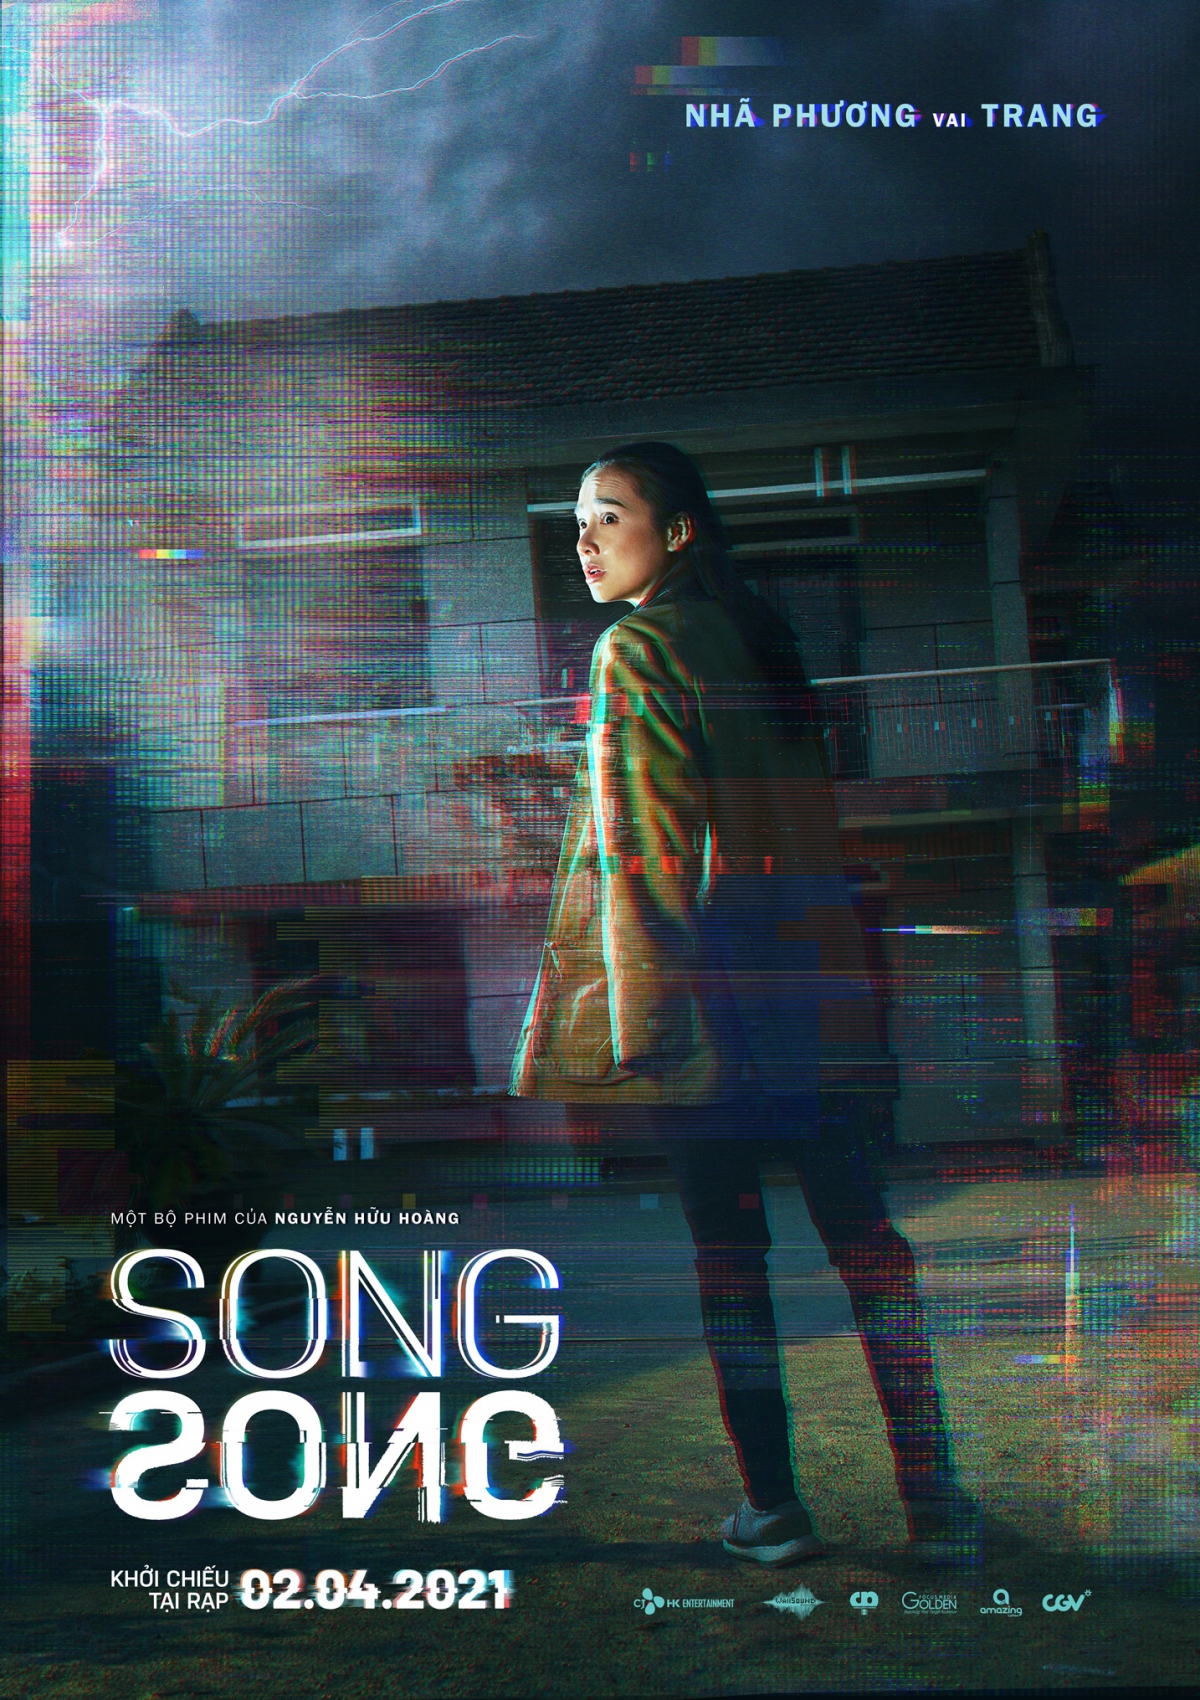 Hé lộ mối quan hệ của Nhã Phương, Trương Thế Vinh trong "Song song"